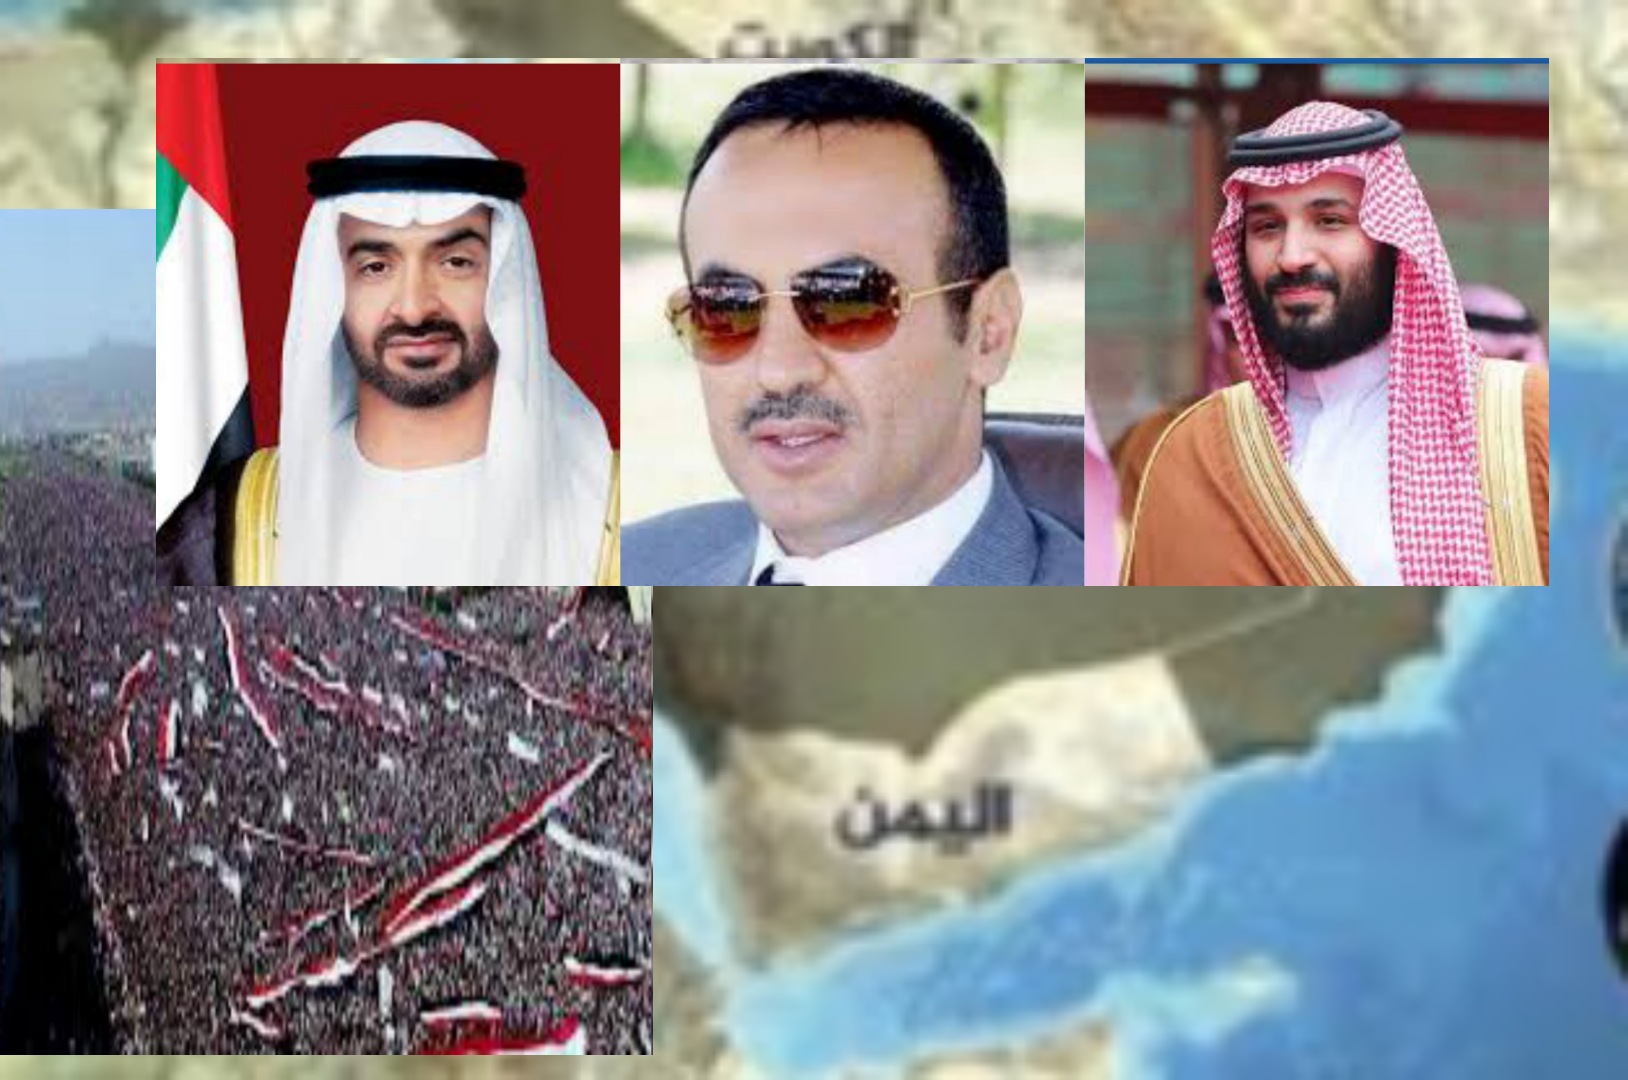 اليمن حراك مستمر ومطالبات واسعة للمجلس الرئاسي برفع العقوبات عن الرئيس الأسبق علي صالح ونجله السفير احمد علي